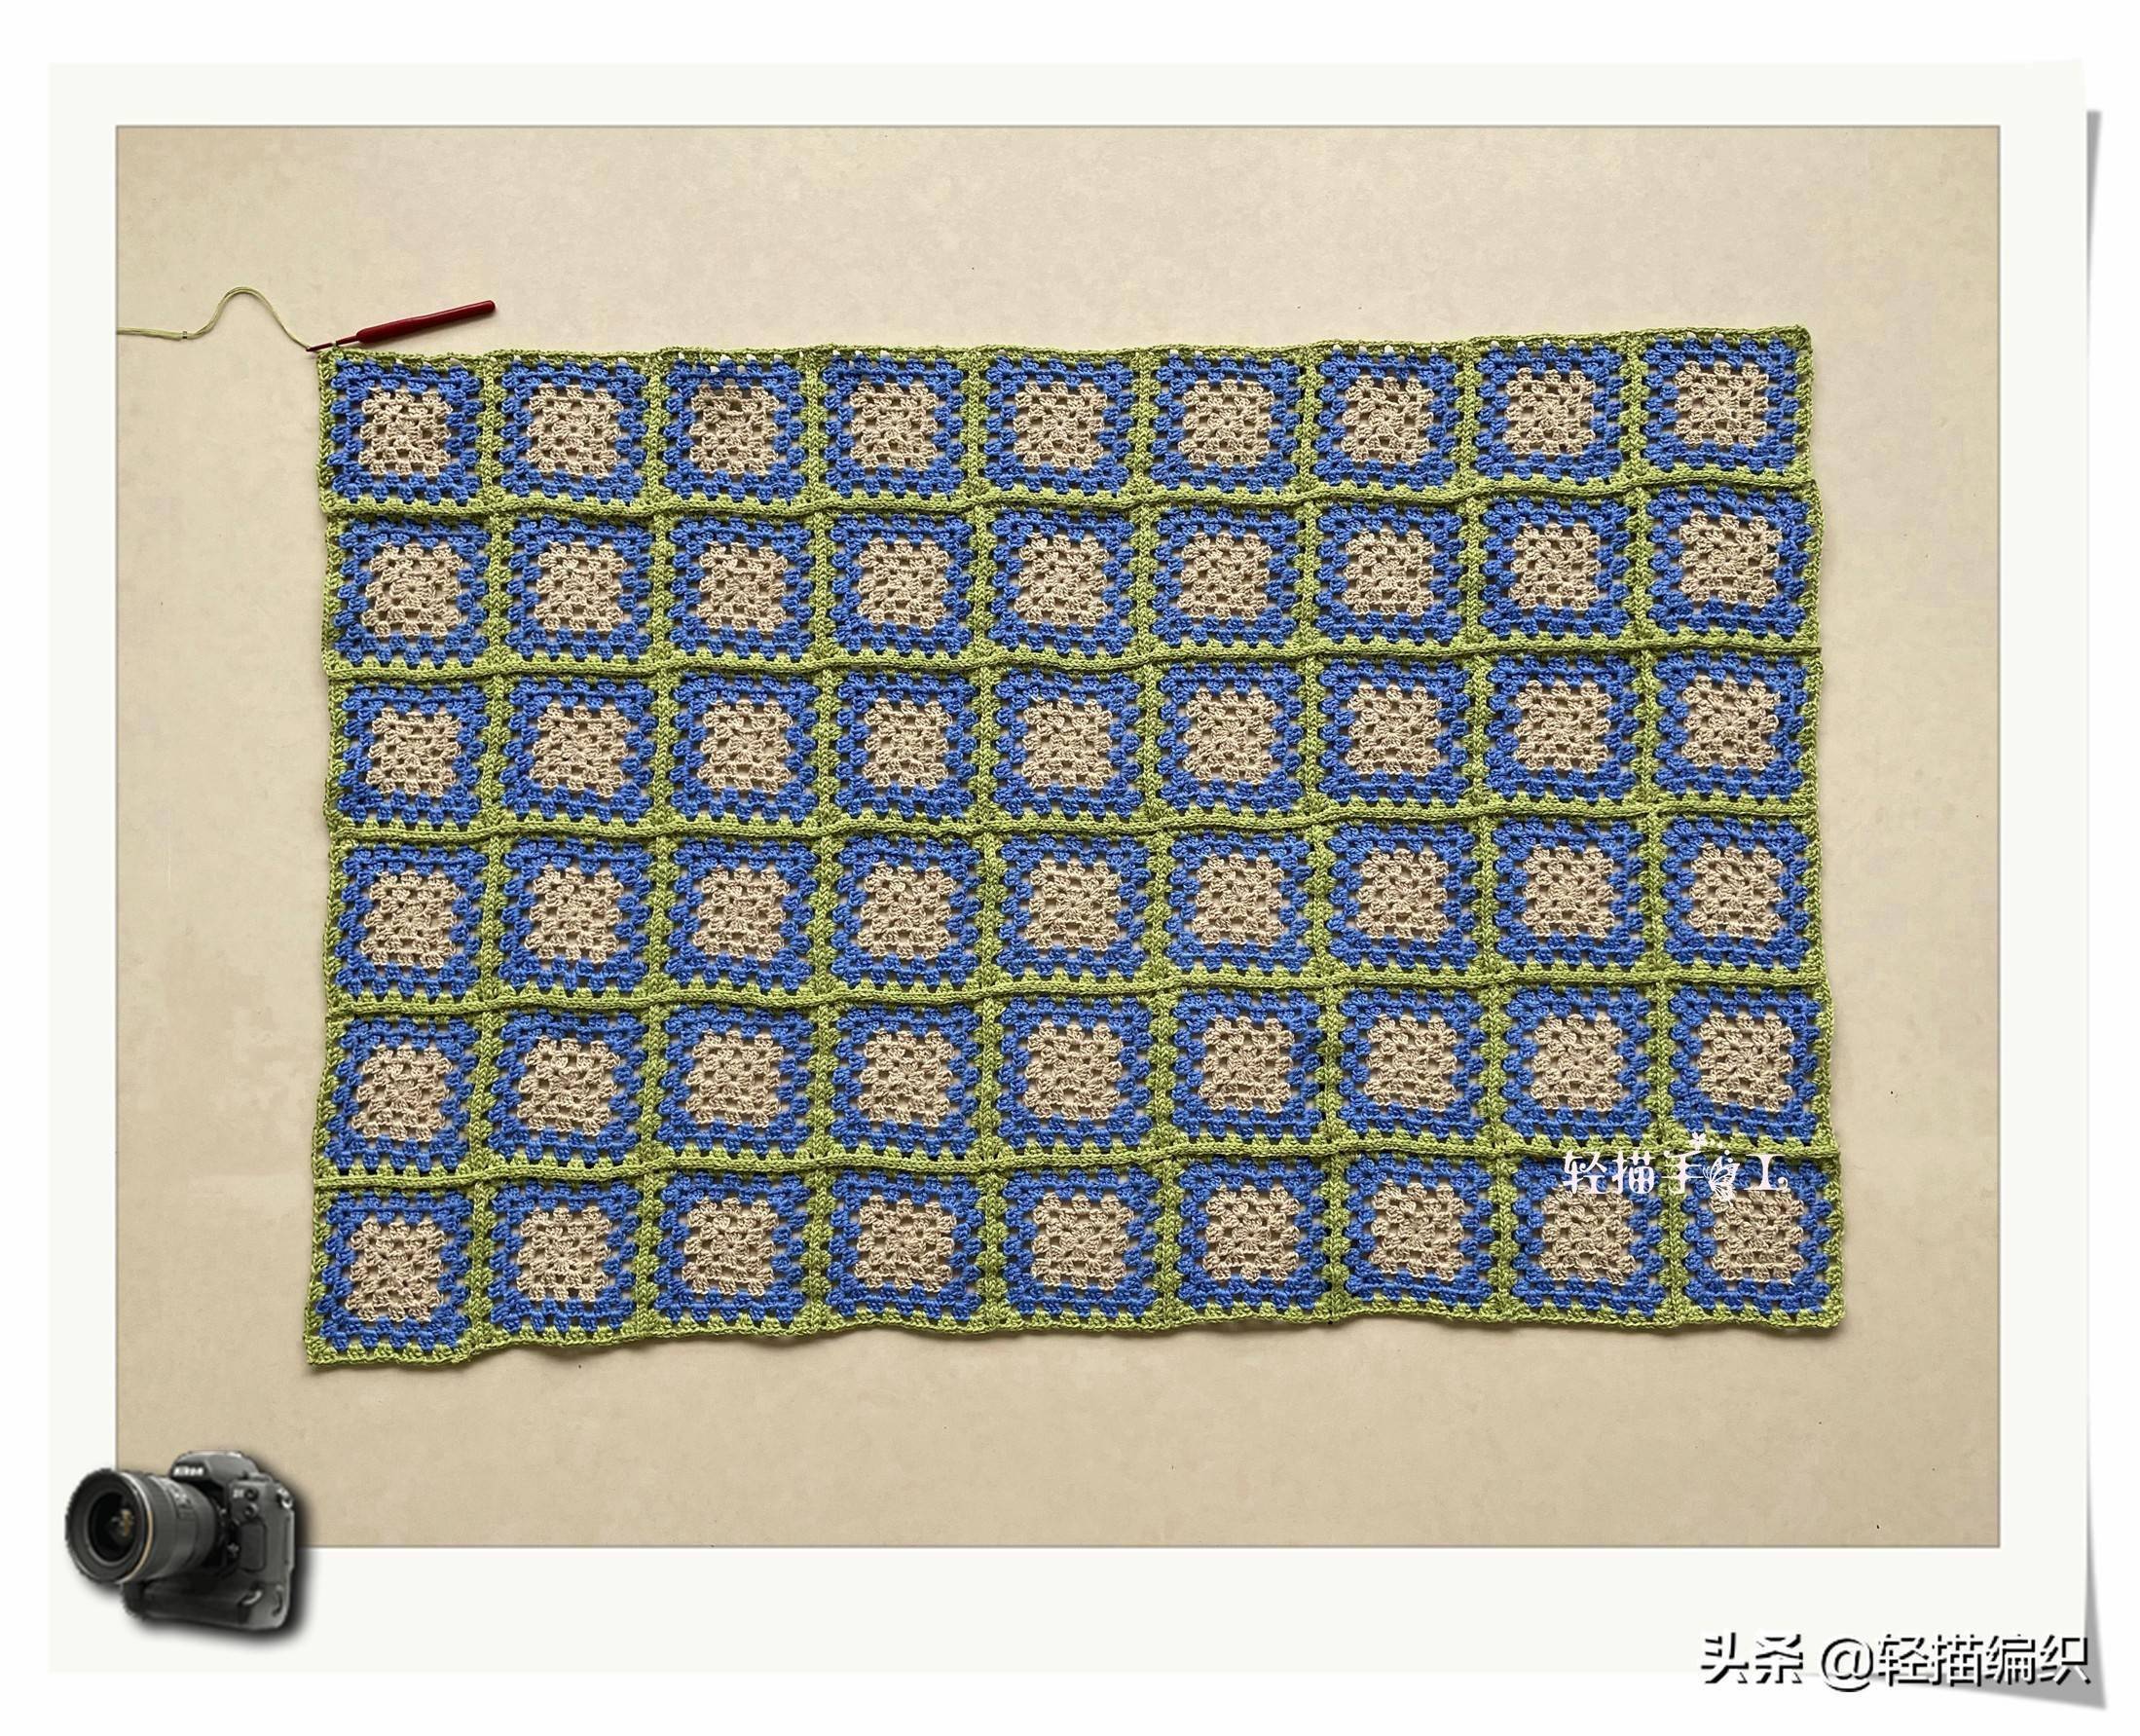 钩条沙发垫,一张长沙发分成2条垫子,经典的祖母格图案,每条54片